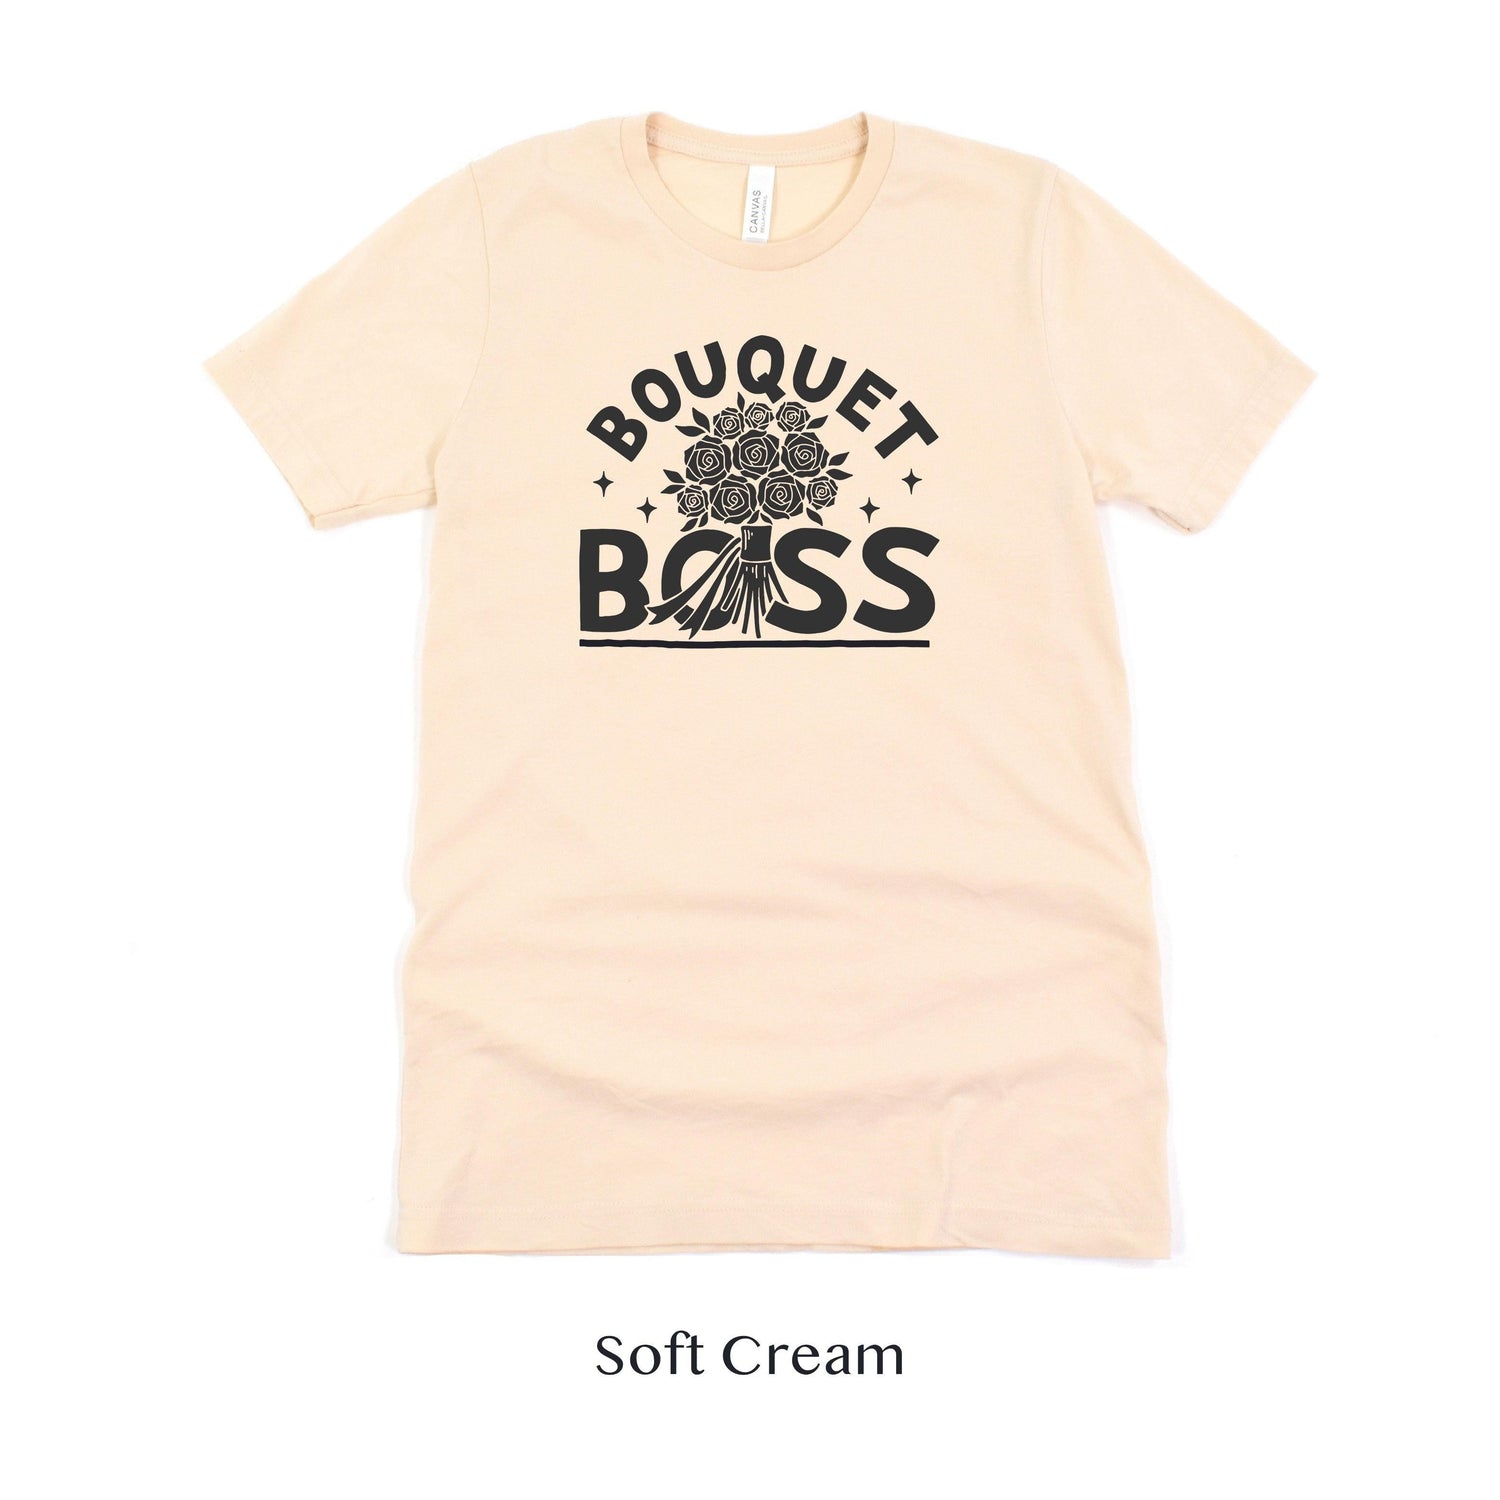 Bouquet Boss Florist Short-sleeve Shirt by Oaklynn Lane - Soft Cream Tee